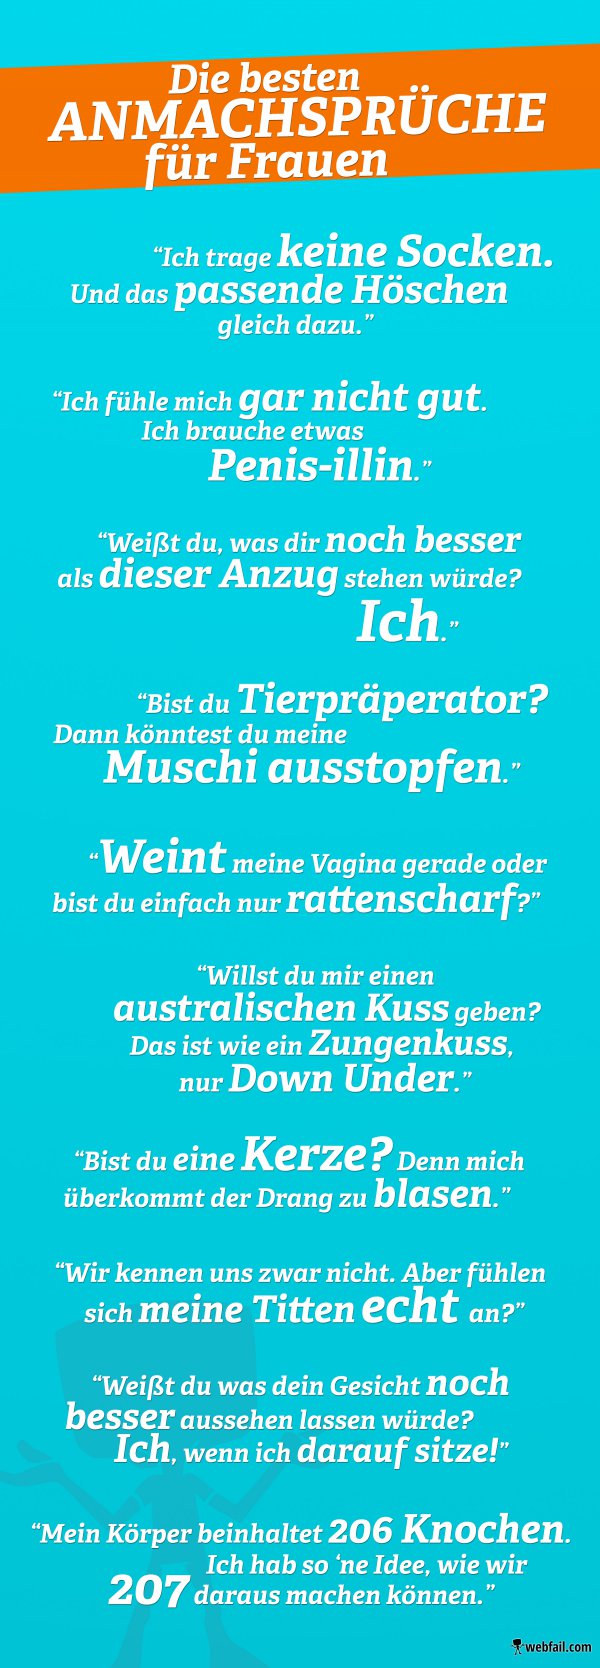 Schlechte Anmachsprüche: Wetten, du lachst?! | hotel-sternzeit.de